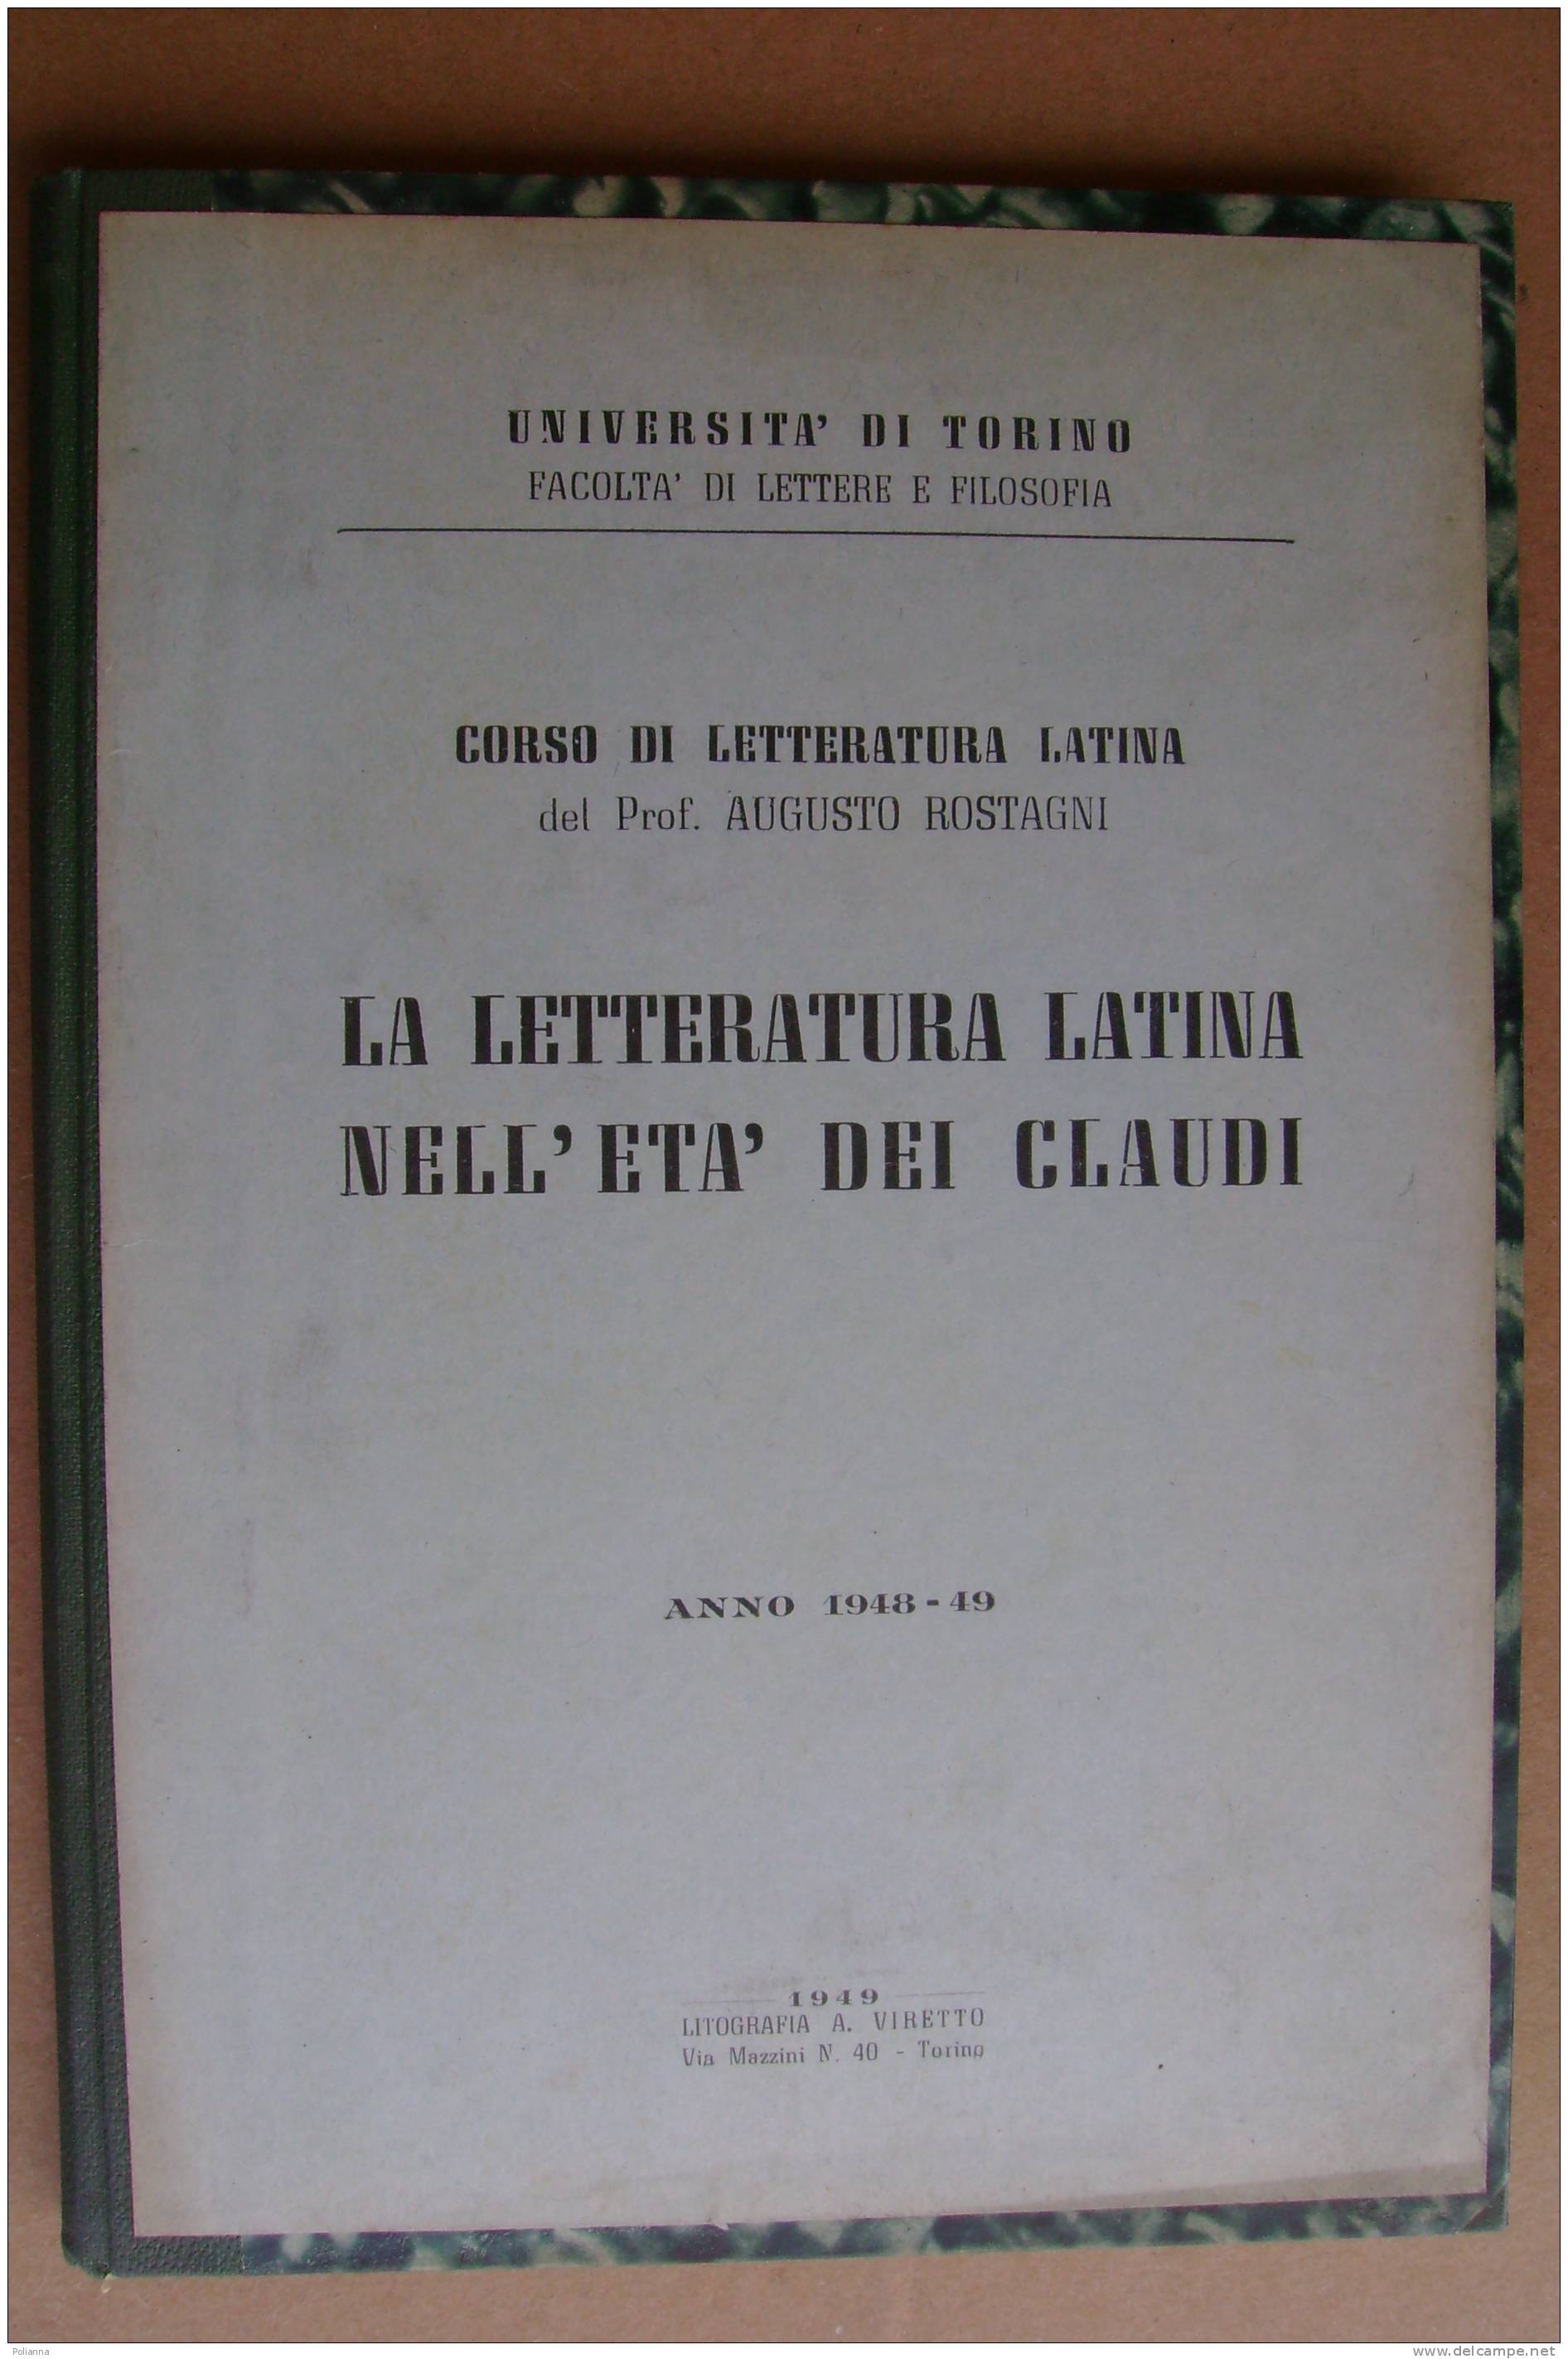 PAR/11 Rostagni LETTERATURA LATINA NELL´ETA´ DEI CLAUDI 1949 - Klassiekers